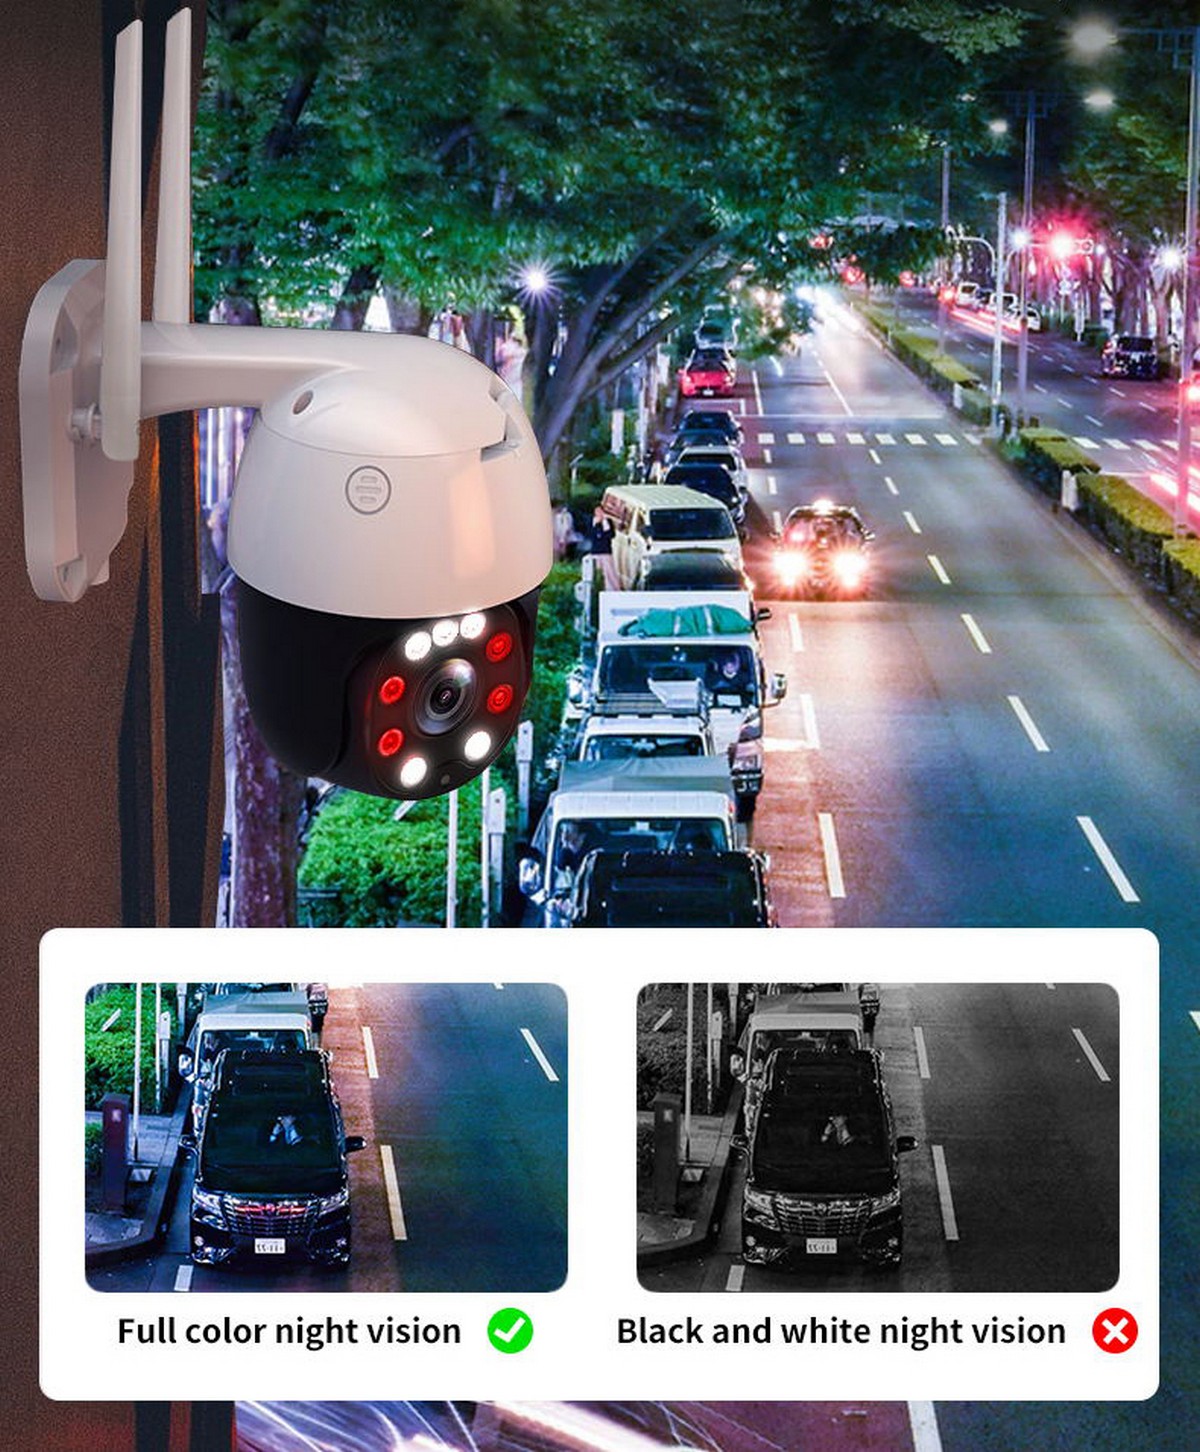 έγχρωμη πολύχρωμη κάμερα νυχτερινής όρασης IP σε ένα σπίτι